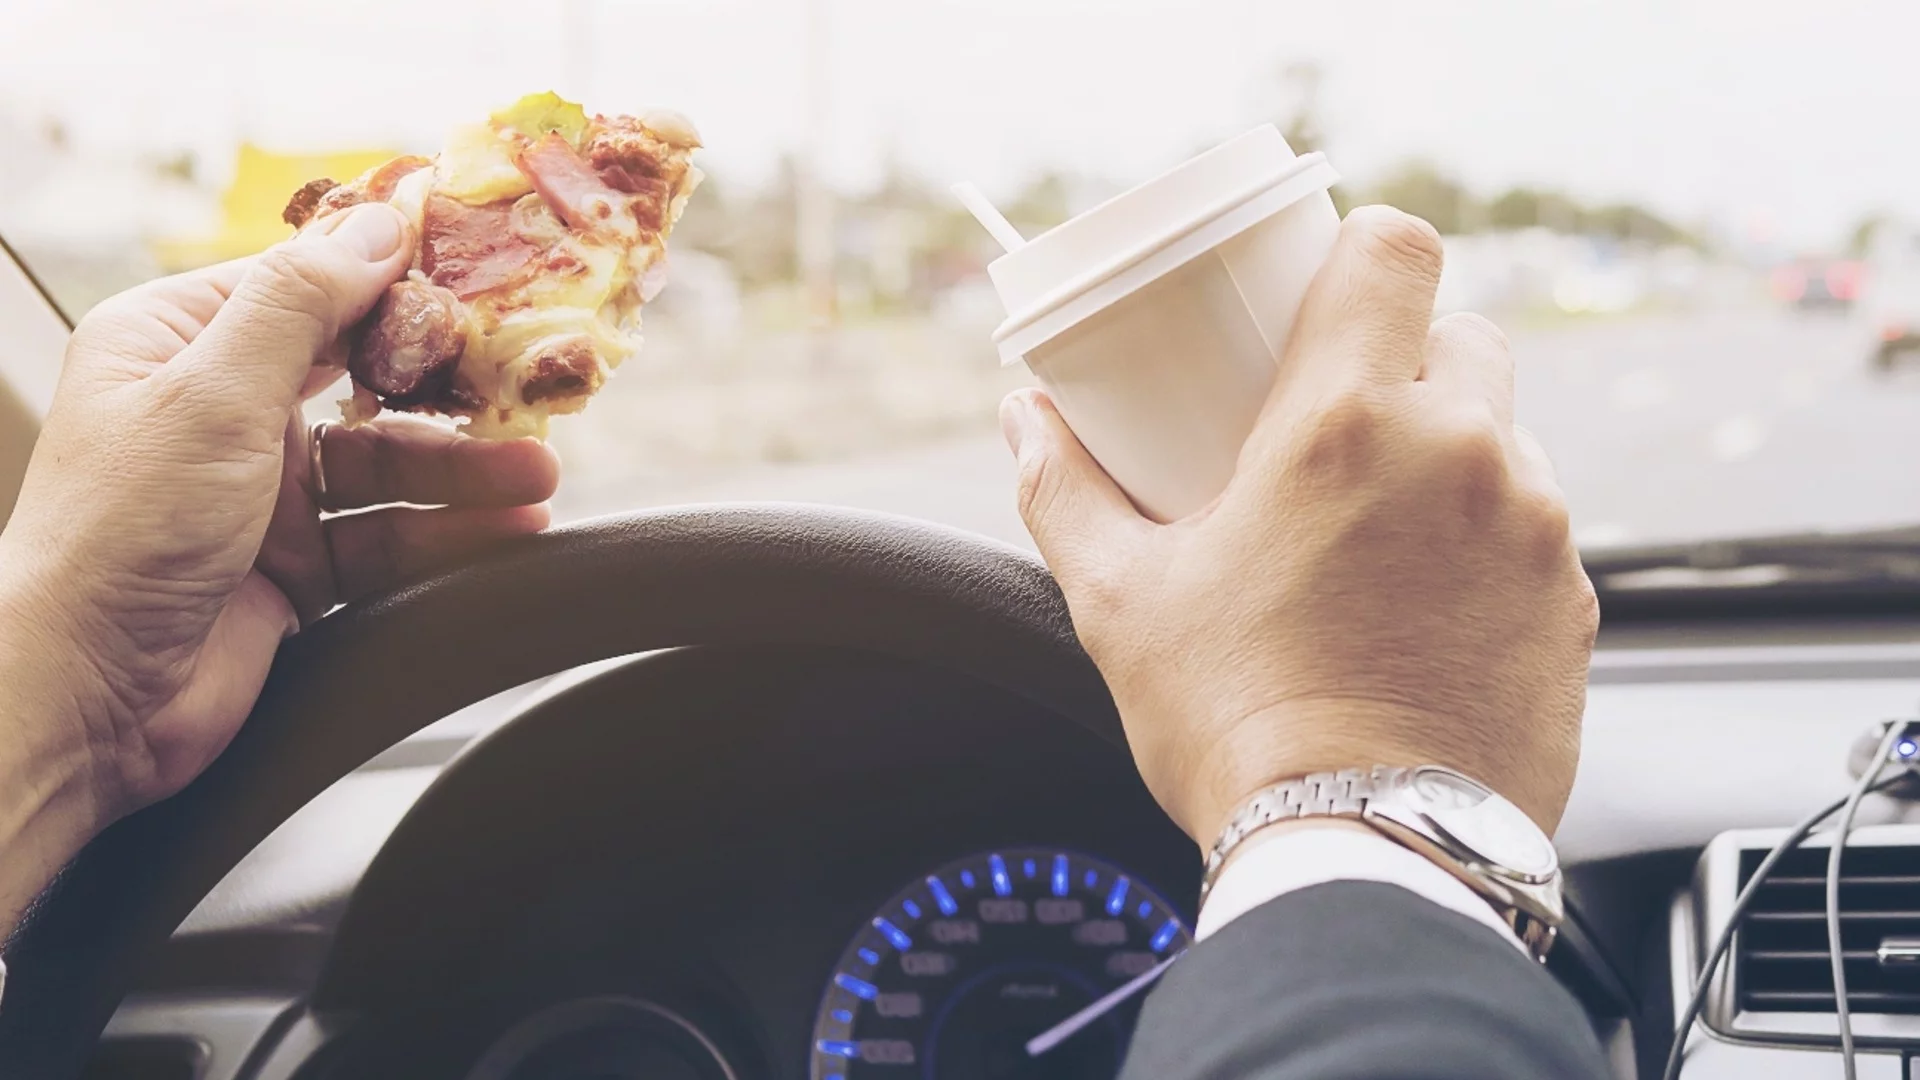 5 храни, които трябва да се избягват, докато се шофира